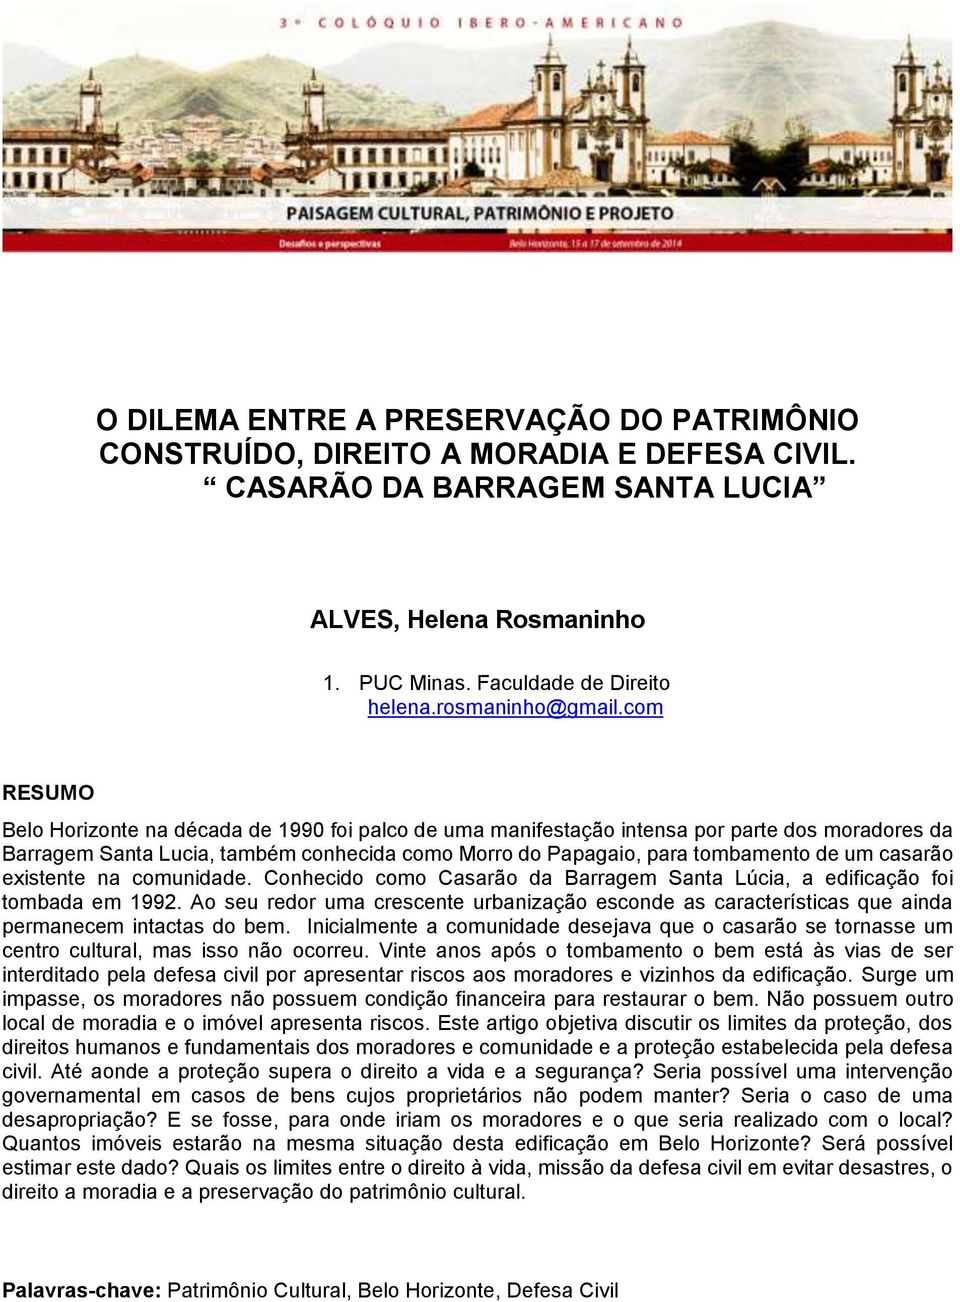 com RESUMO Belo Horizonte na década de 1990 foi palco de uma manifestação intensa por parte dos moradores da Barragem Santa Lucia, também conhecida como Morro do Papagaio, para tombamento de um